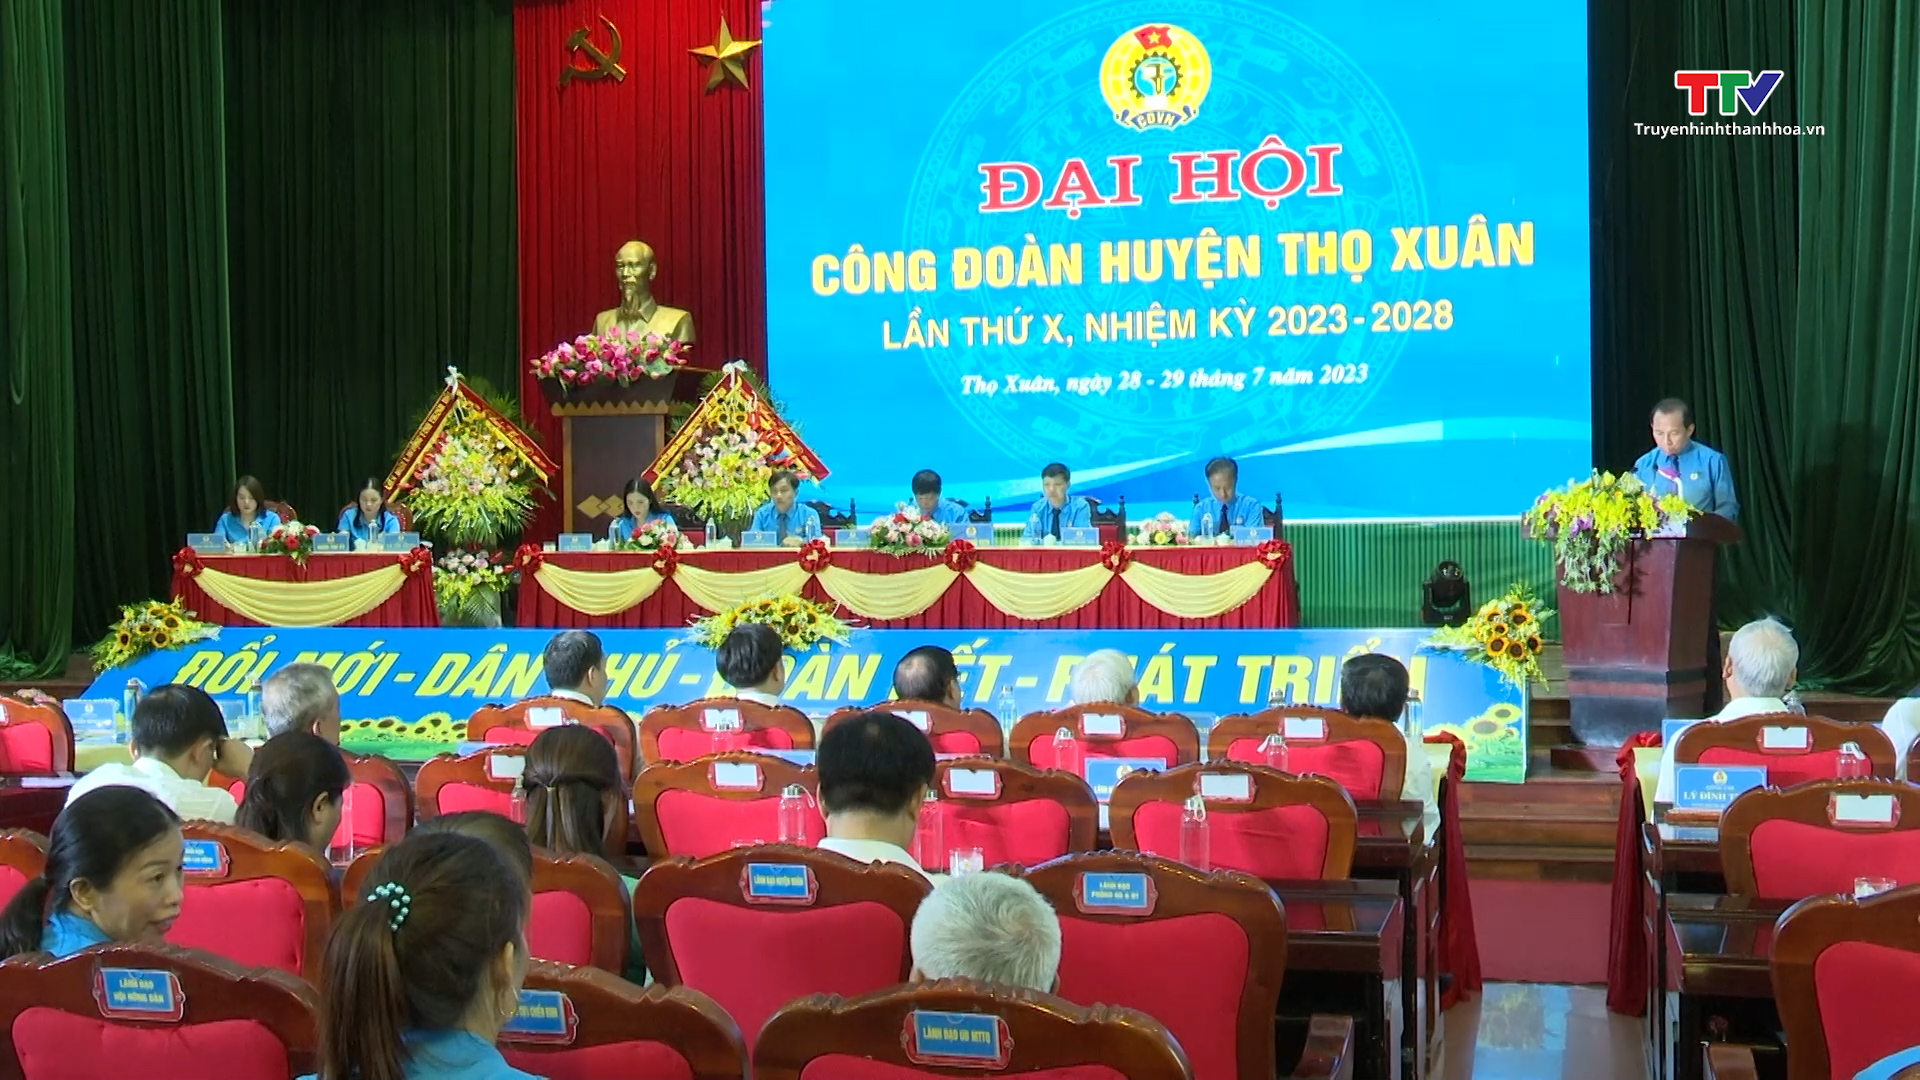 Đại hội Công đoàn huyện Thọ Xuân lần thứ 10, nhiệm kỳ 2023 – 2028 - Ảnh 2.